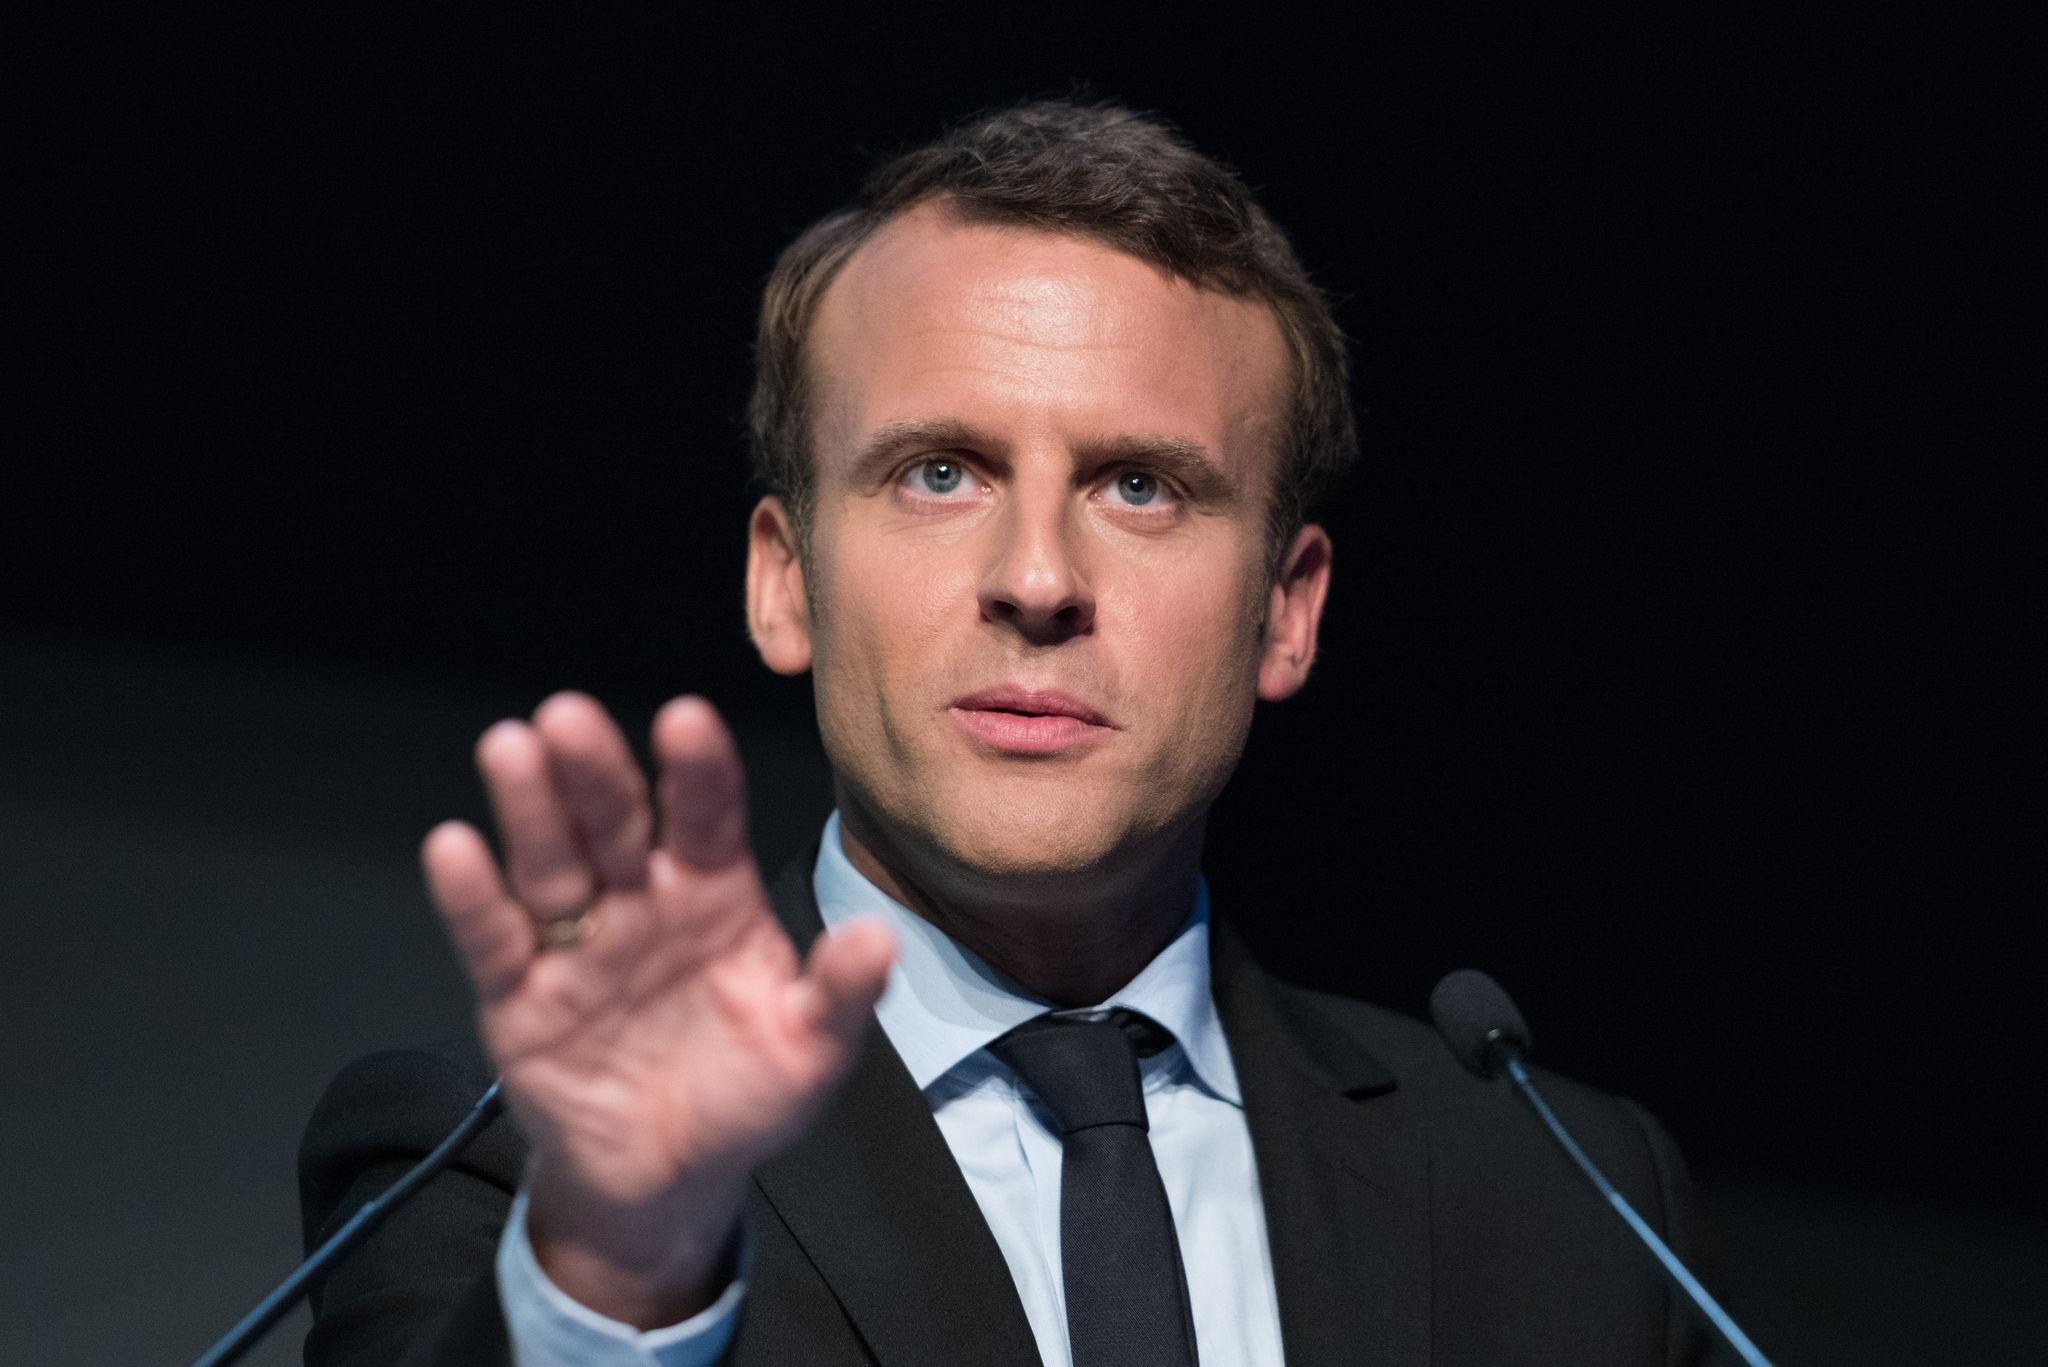 Emmanuel Macron lors d'un discours officiel. l Source : Shutterstock